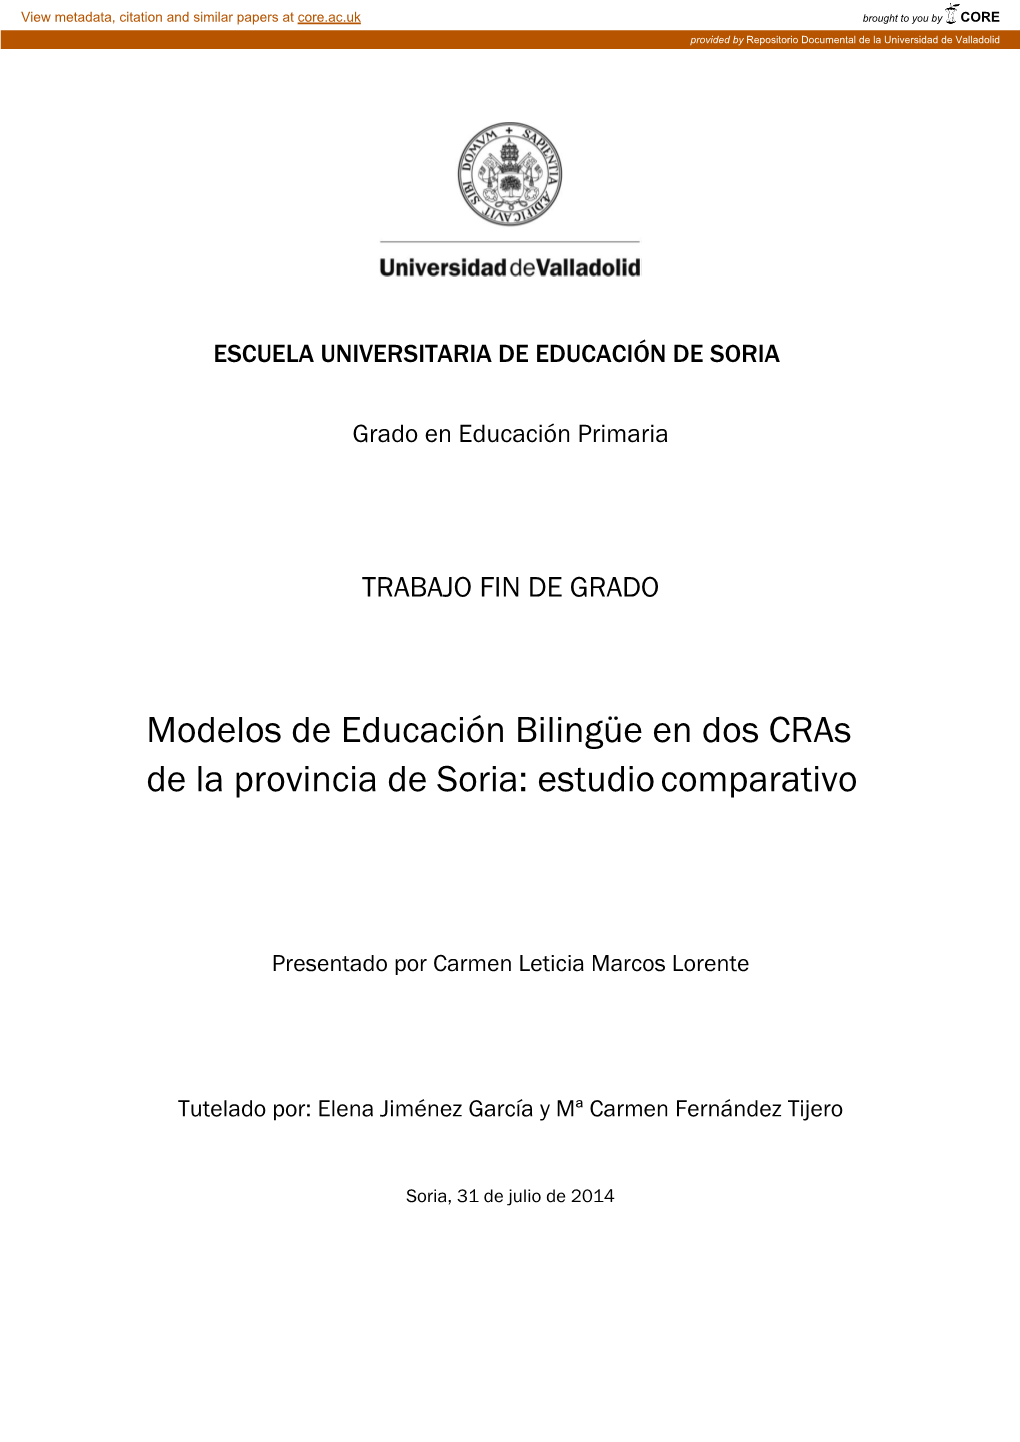 Modelos De Educación Bilingüe En Dos Cras De La Provincia De Soria: Estudio Comparativo